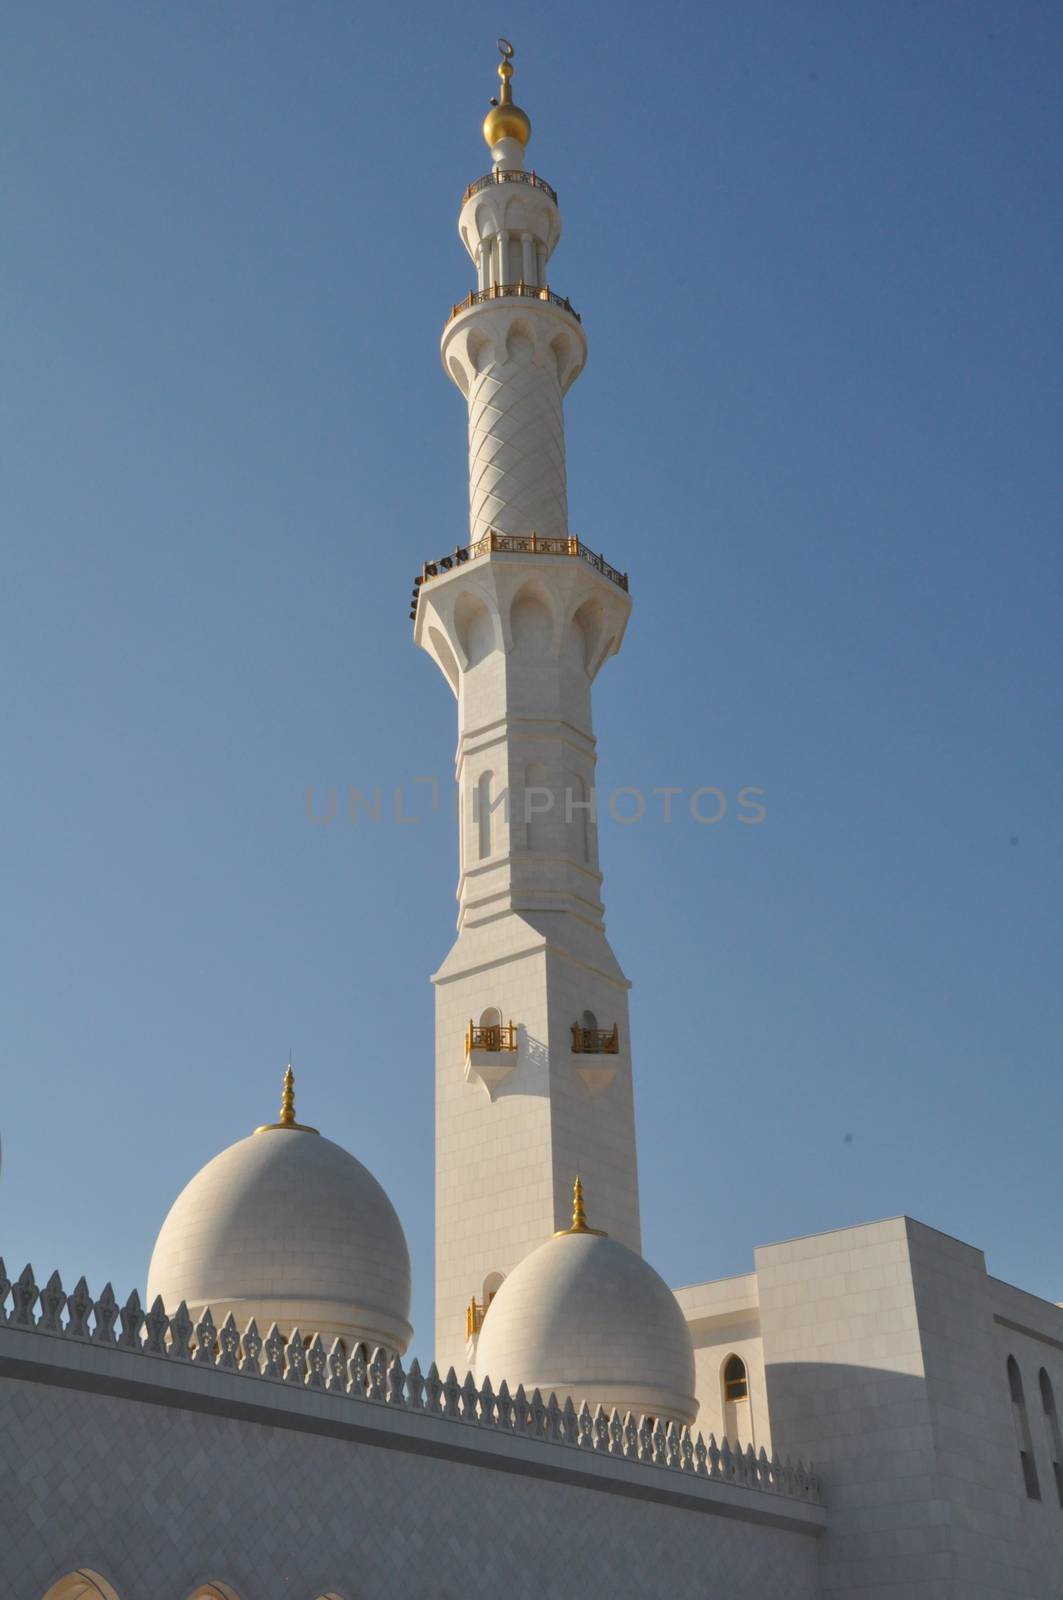 Sheikh Zayed Grand Mosque in Abu Dhabi, UAE by sainaniritu